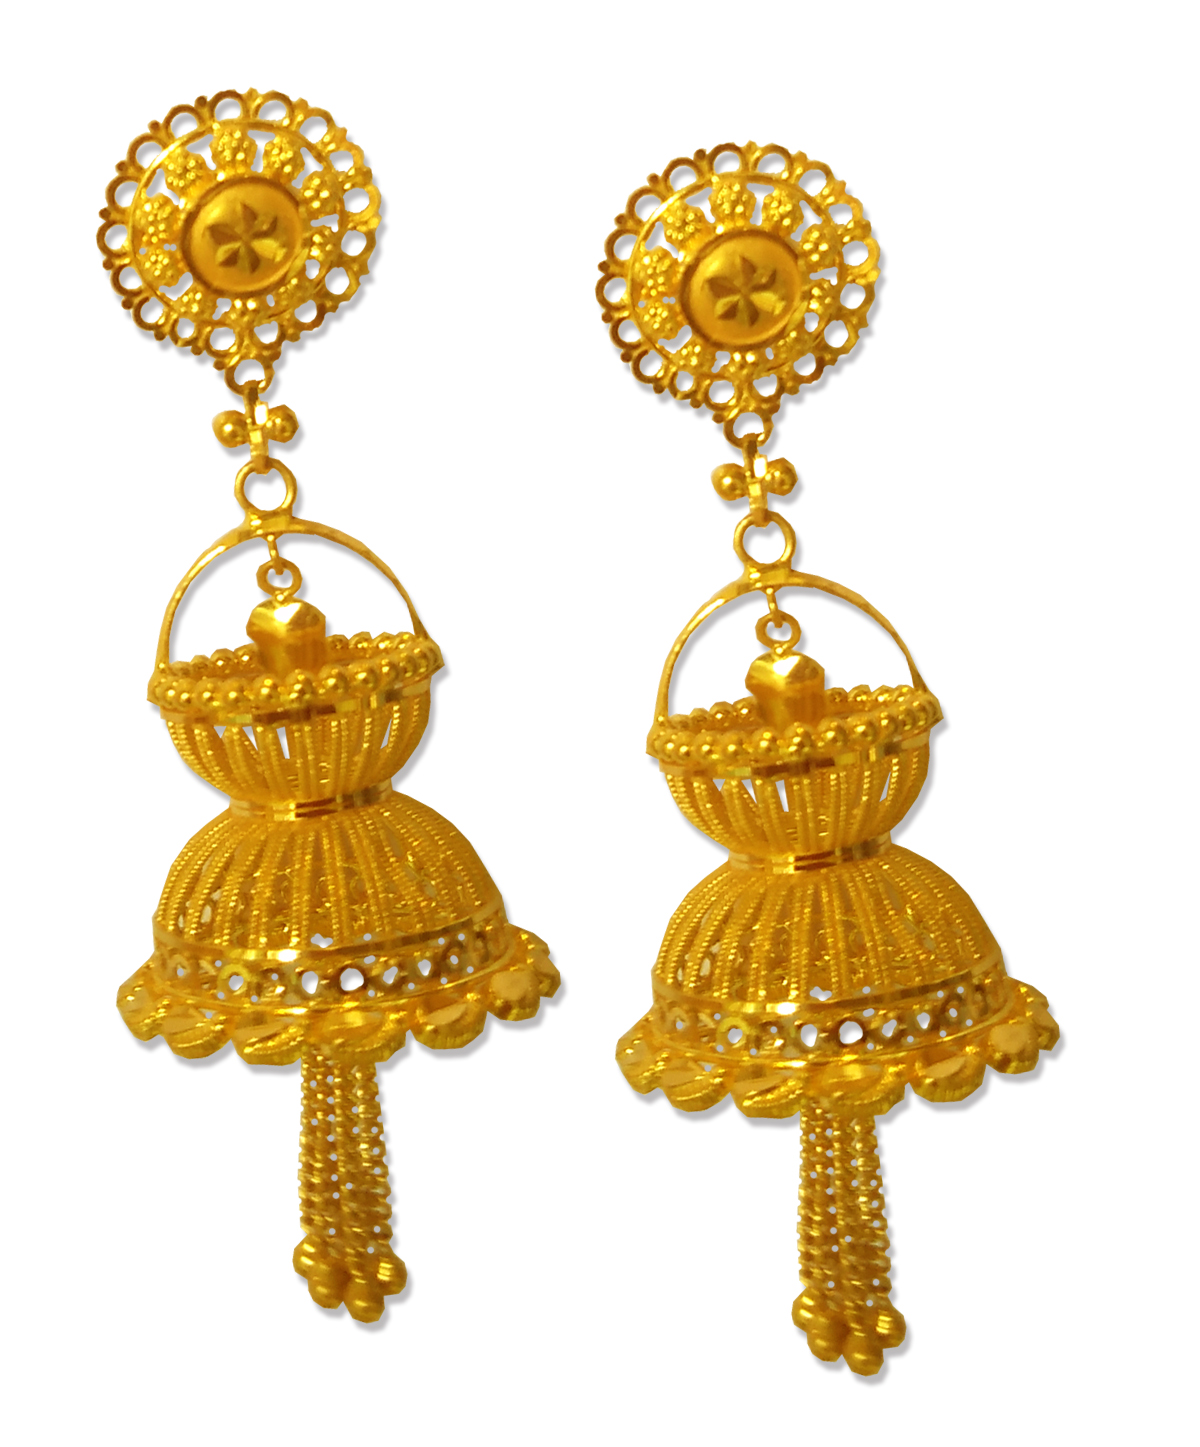 Guinea Emporium: Top Kolkata gold Jewellery Shop| 22K Hallmark Store